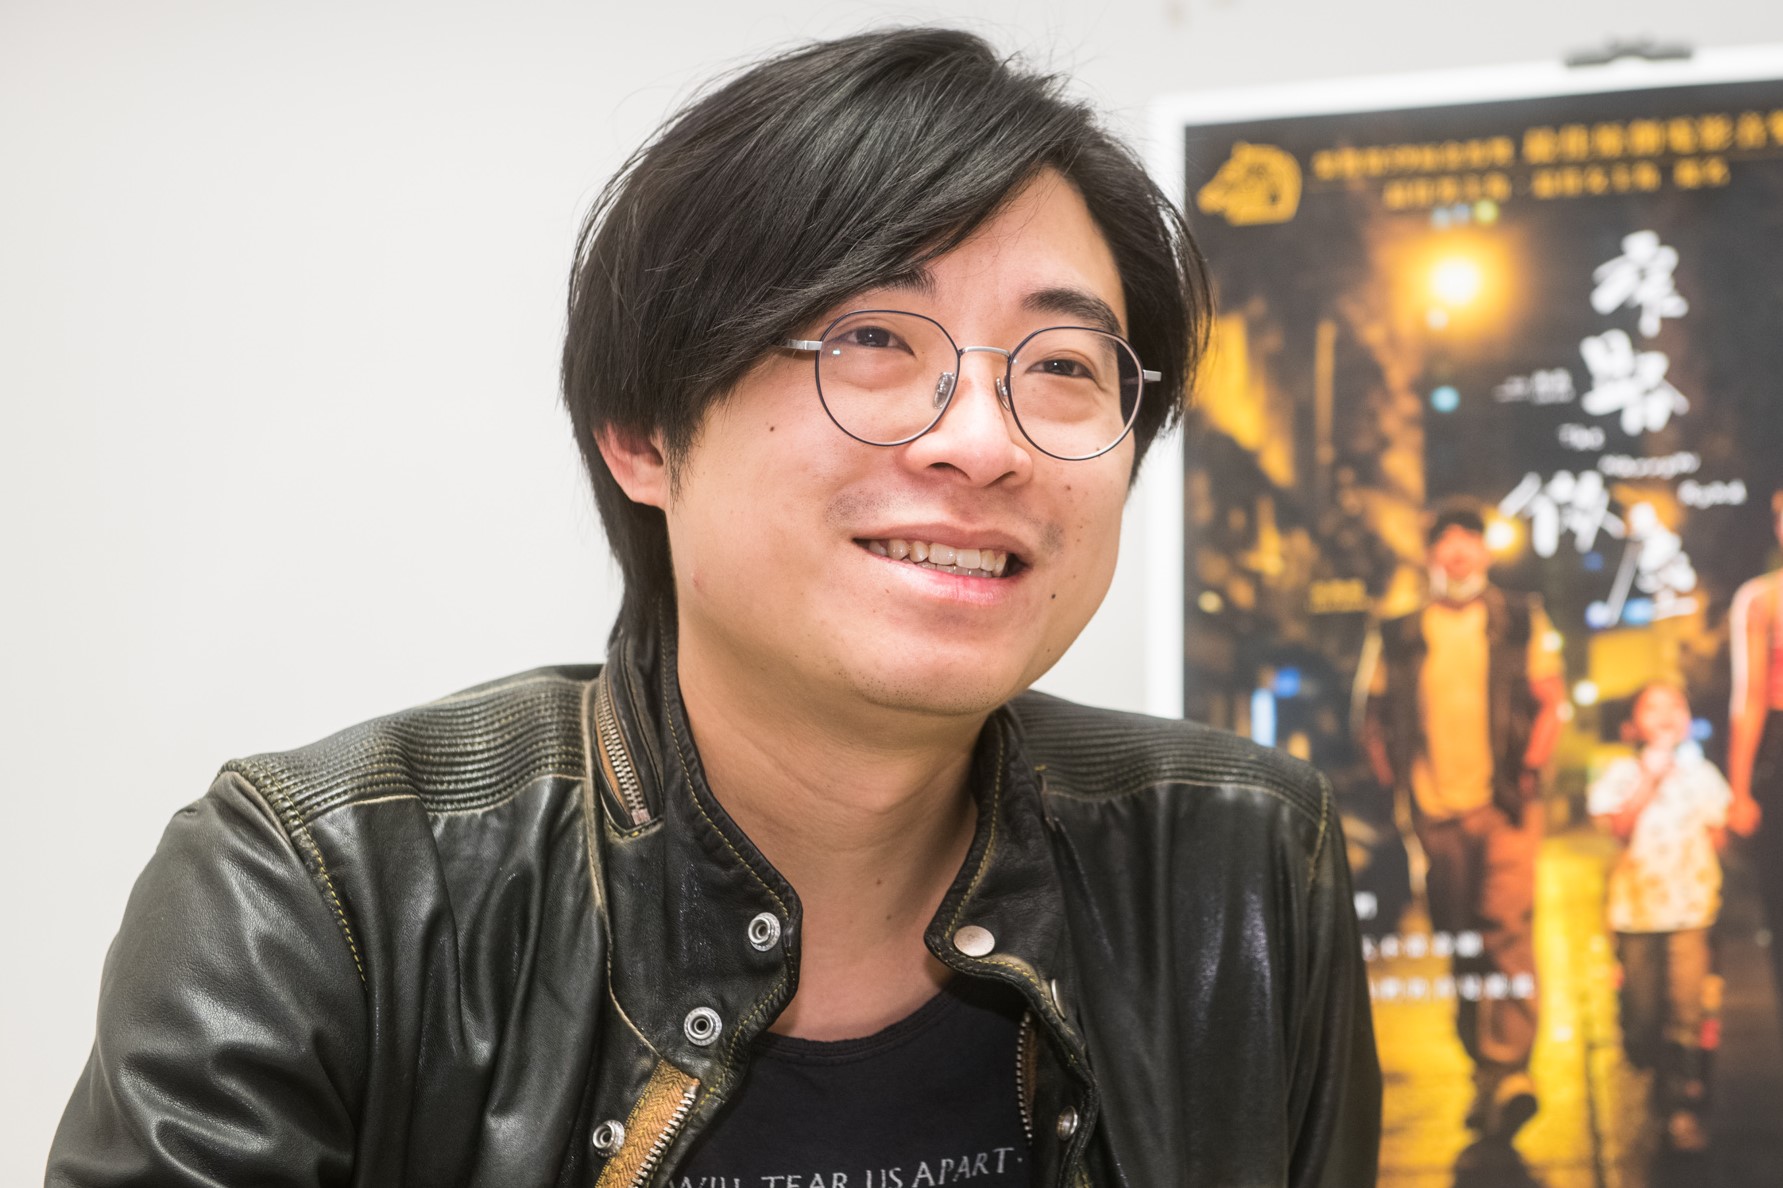 「映画には社会を変える力があると信じている」　新世代の香港映画『星くずの片隅で』のラム・サム監督インタビュー